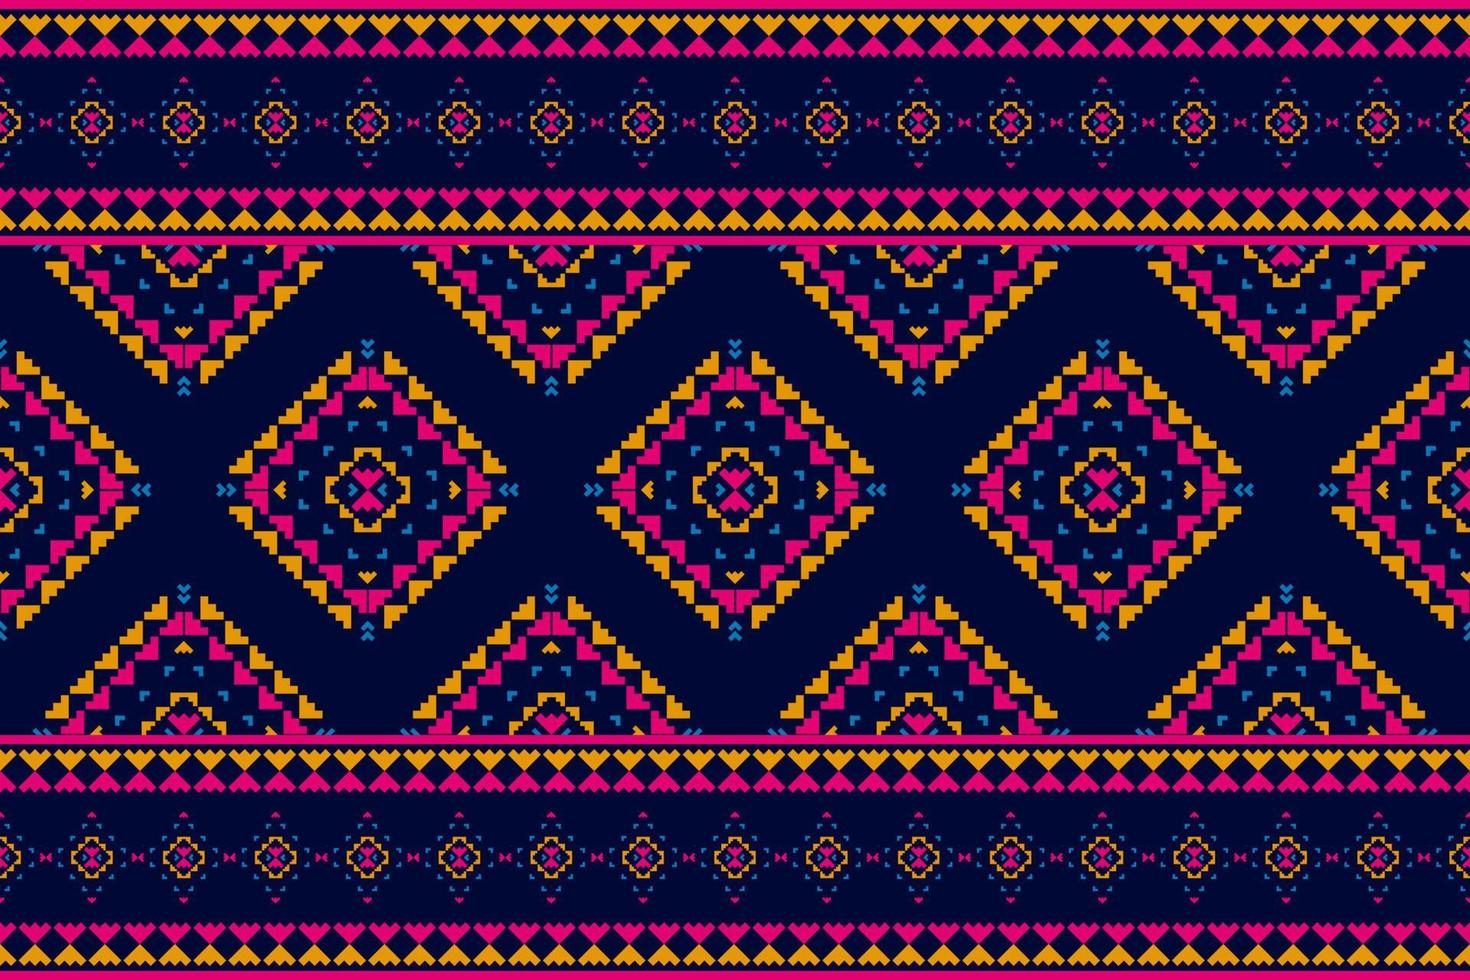 tapete étnico tribal arte padrão. padrão sem emenda étnico geométrico em tribal. estilo mexicano. vetor